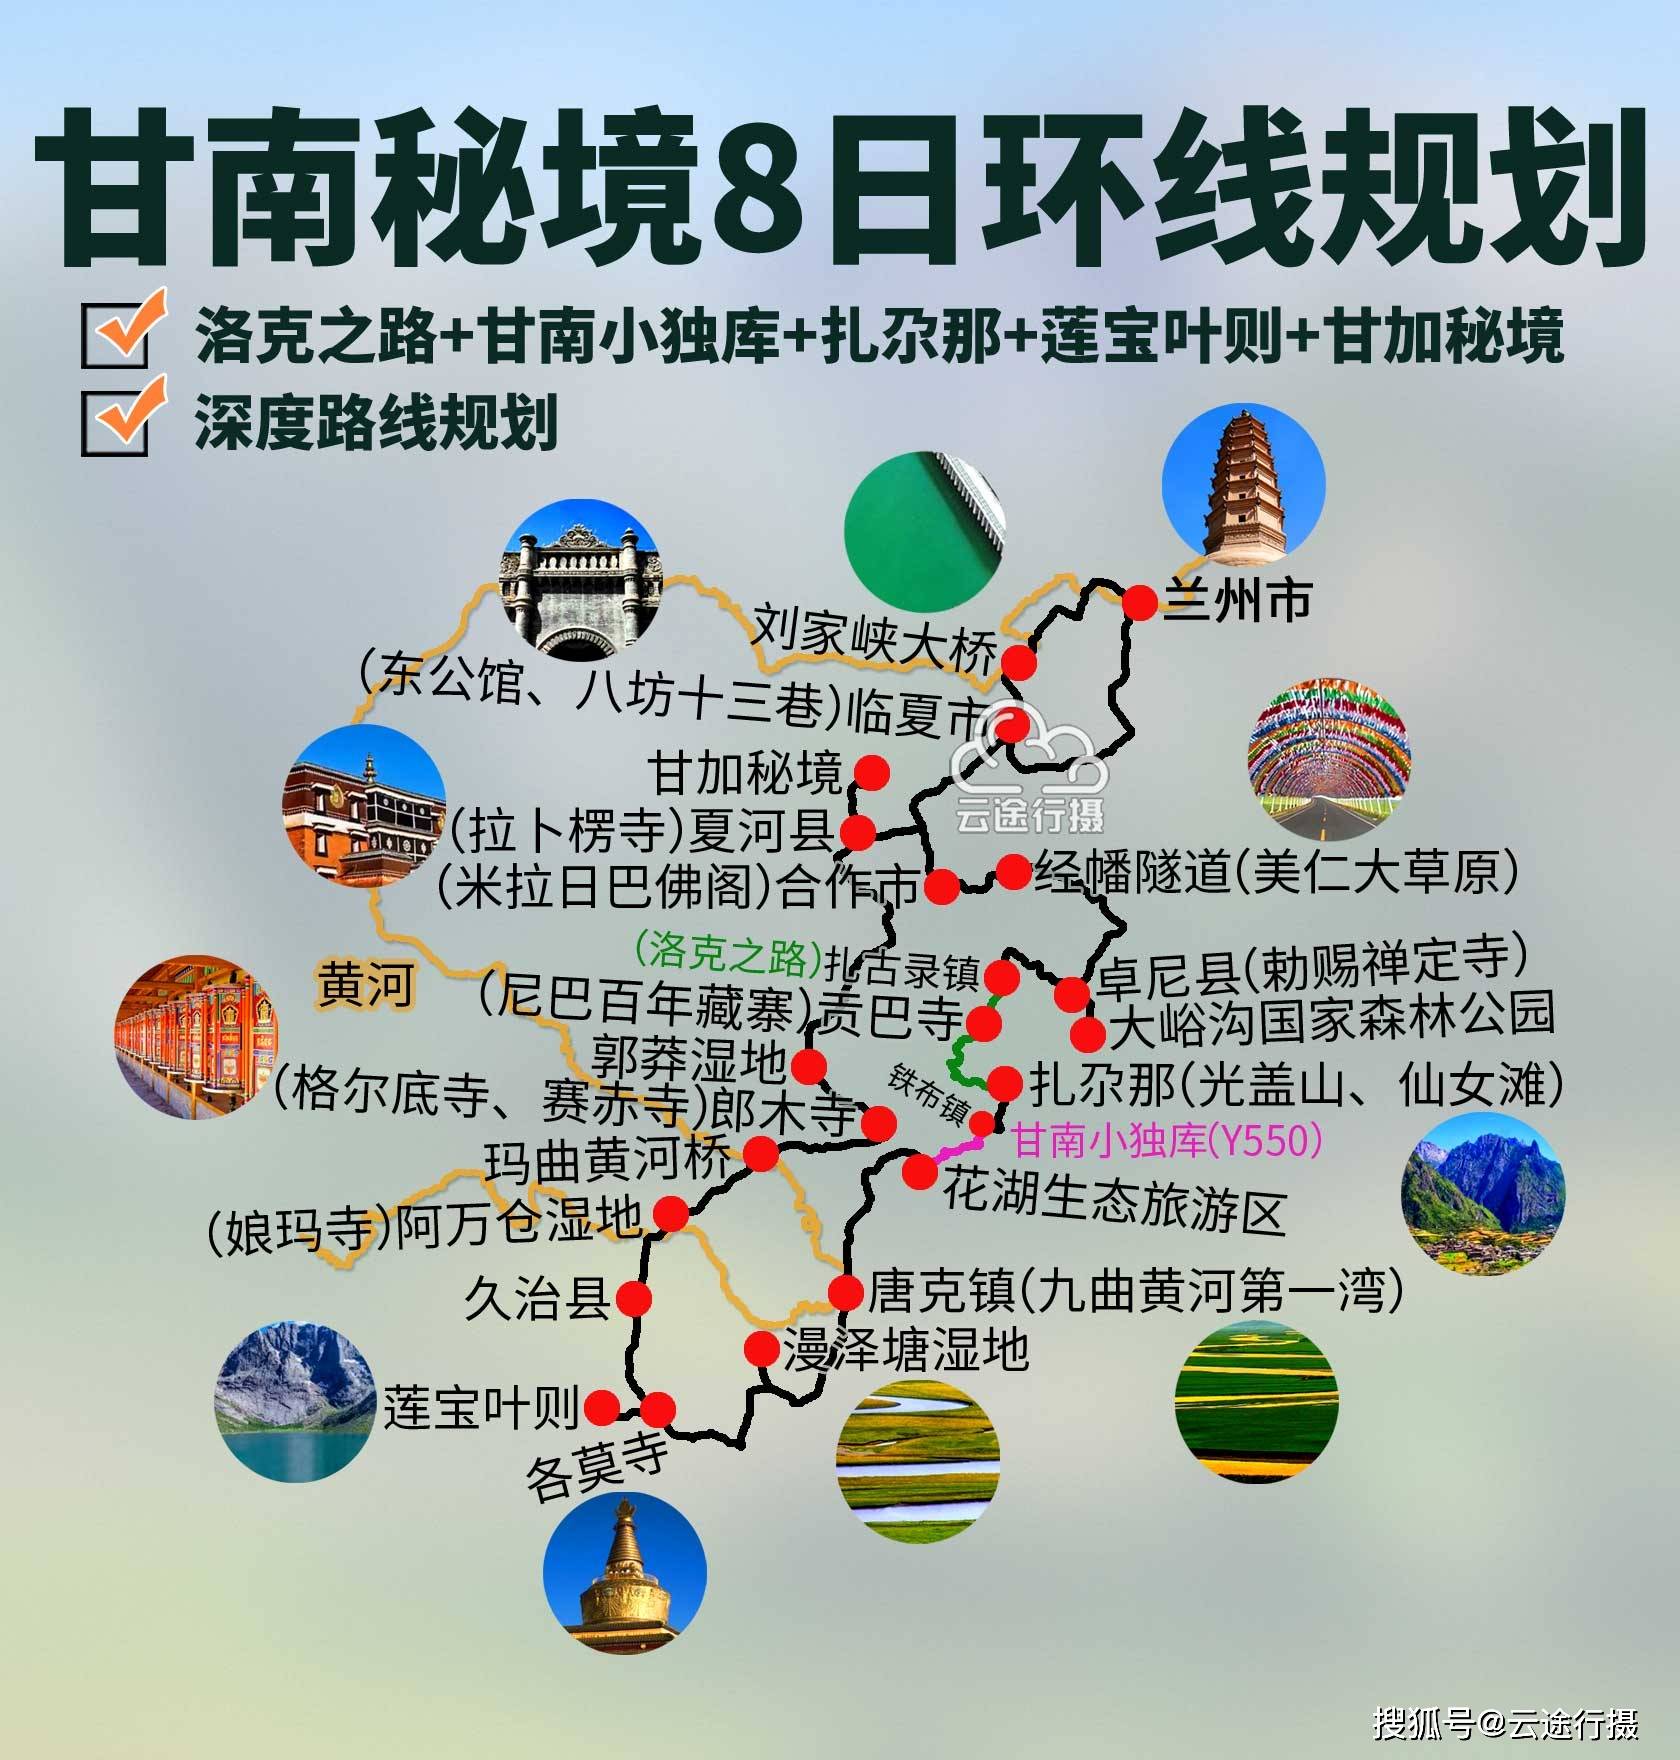 甘肃甘南秘境全景8日环线旅游路线规划攻略,深入九色甘南秘境地区小众